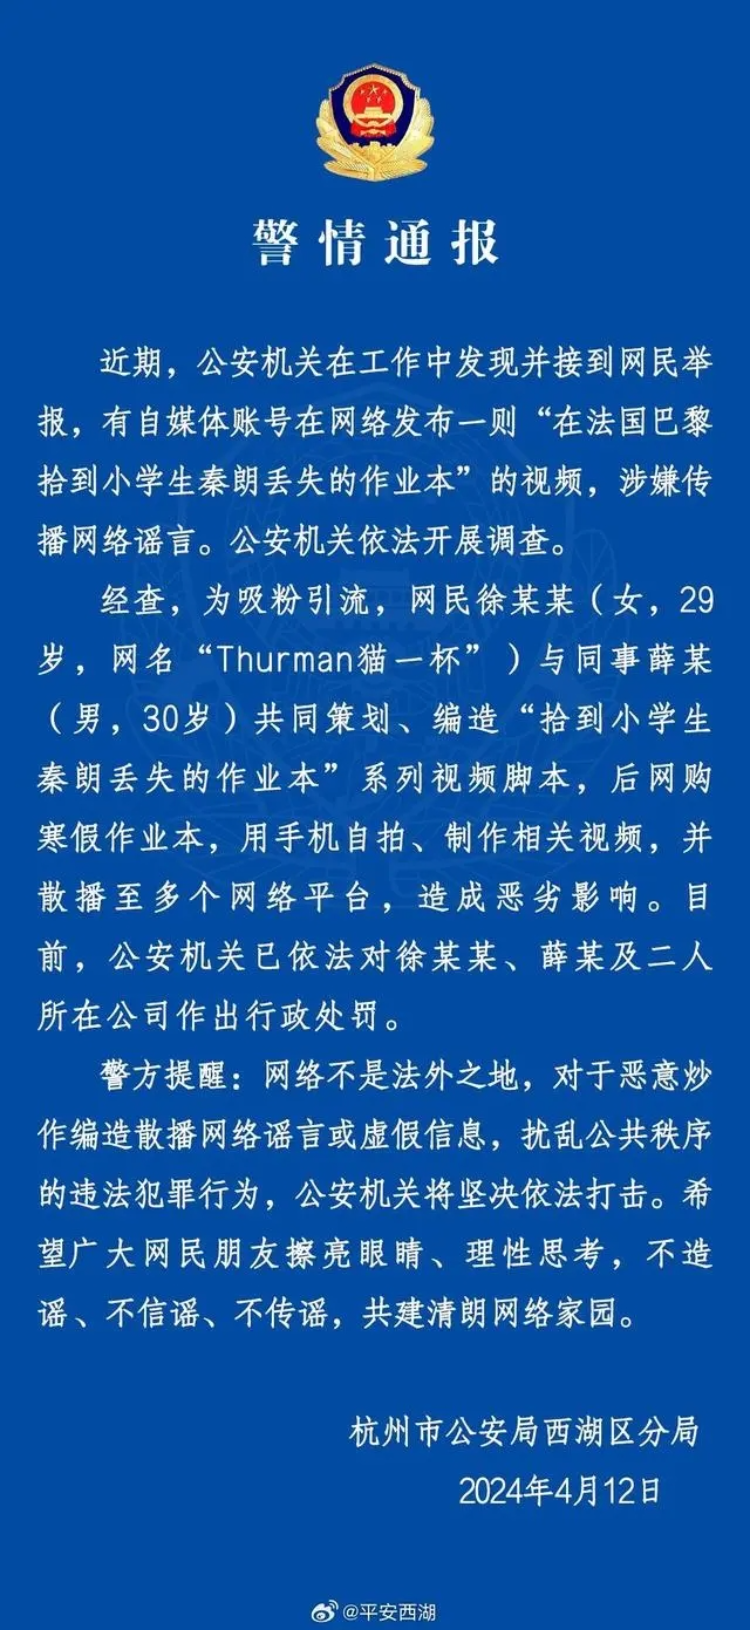 杭州警方发布通报。 图片来源“平安西湖”微信公号